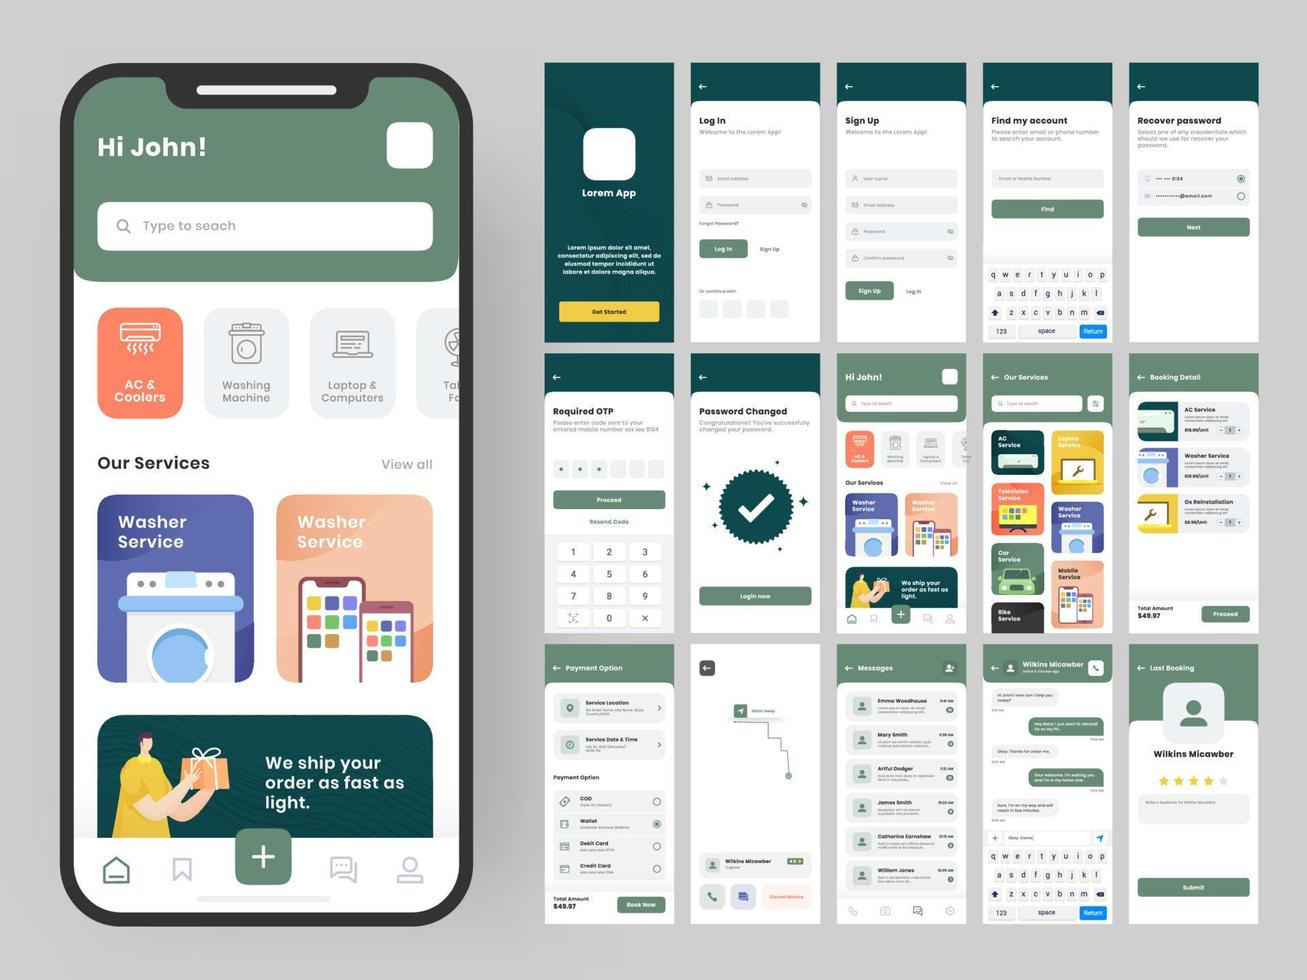 mobil app ui utrustning med annorlunda gui layout Inklusive logga i, tecken upp, skapa konto, teknisk objekt detalj, leverans service och betalning skärmar. vektor